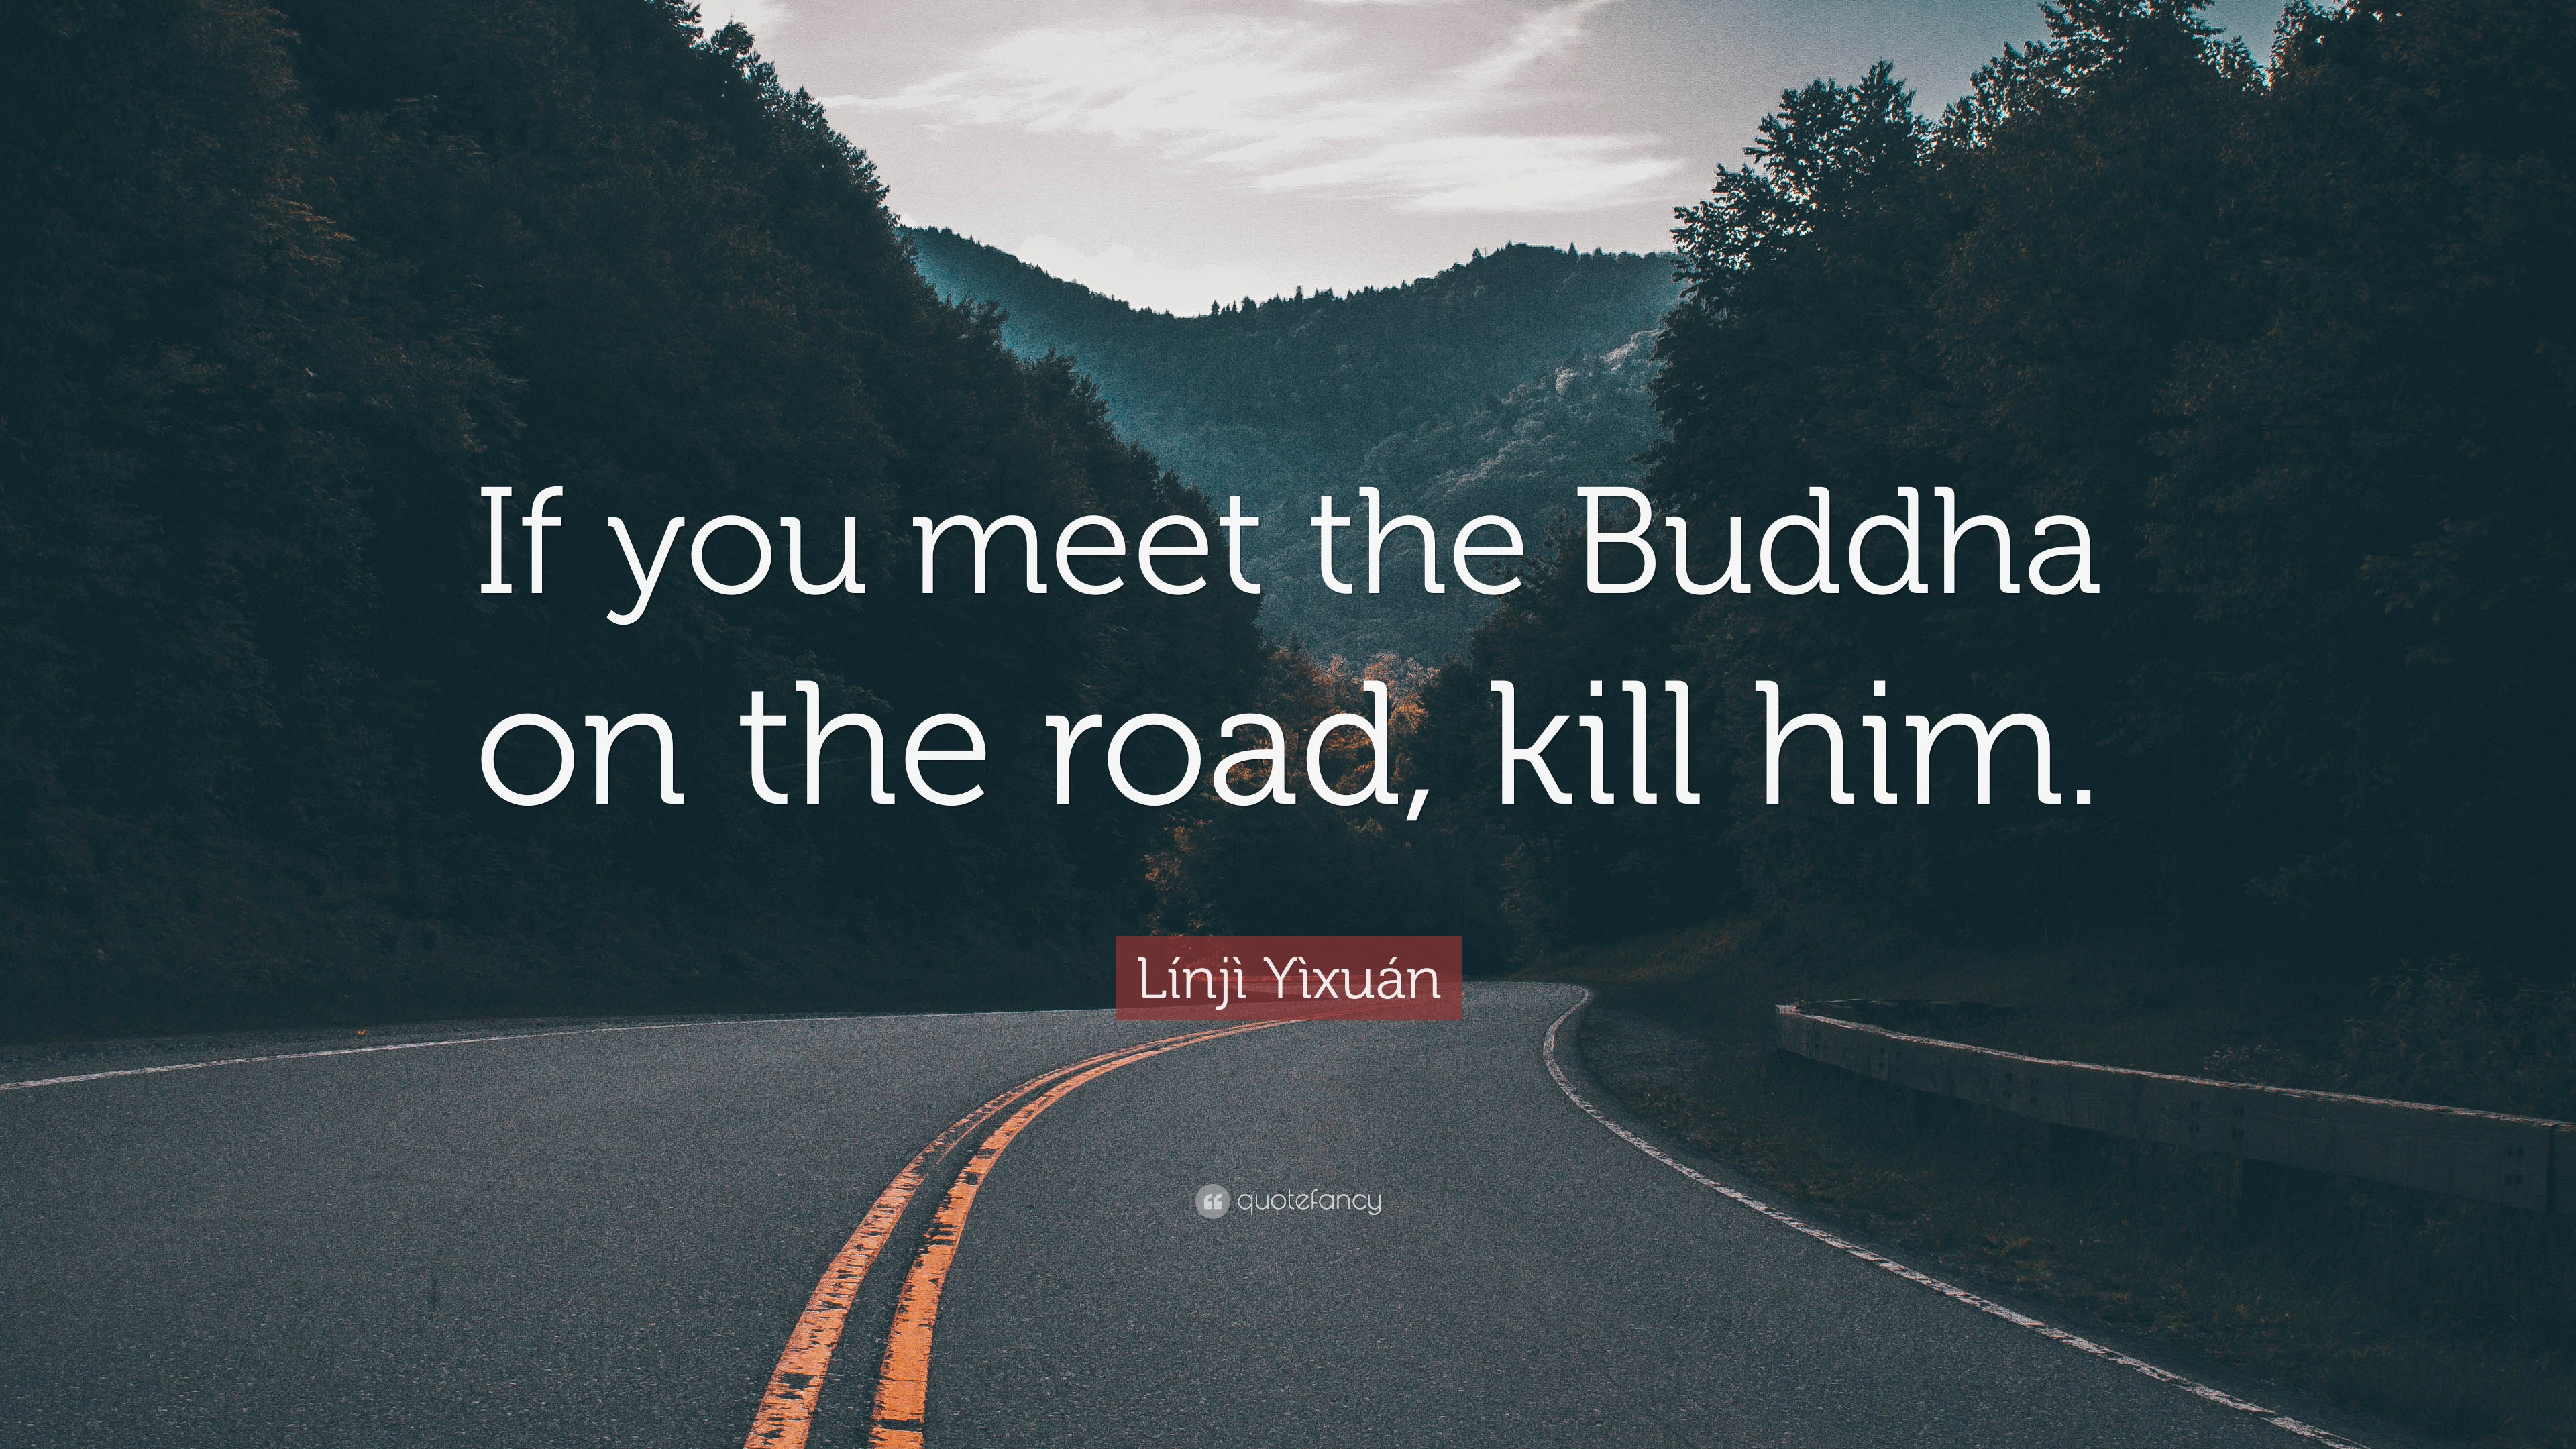 leren cafe Halloween Línjì Yìxuán Quote: “If you meet the Buddha on the road, kill him.”